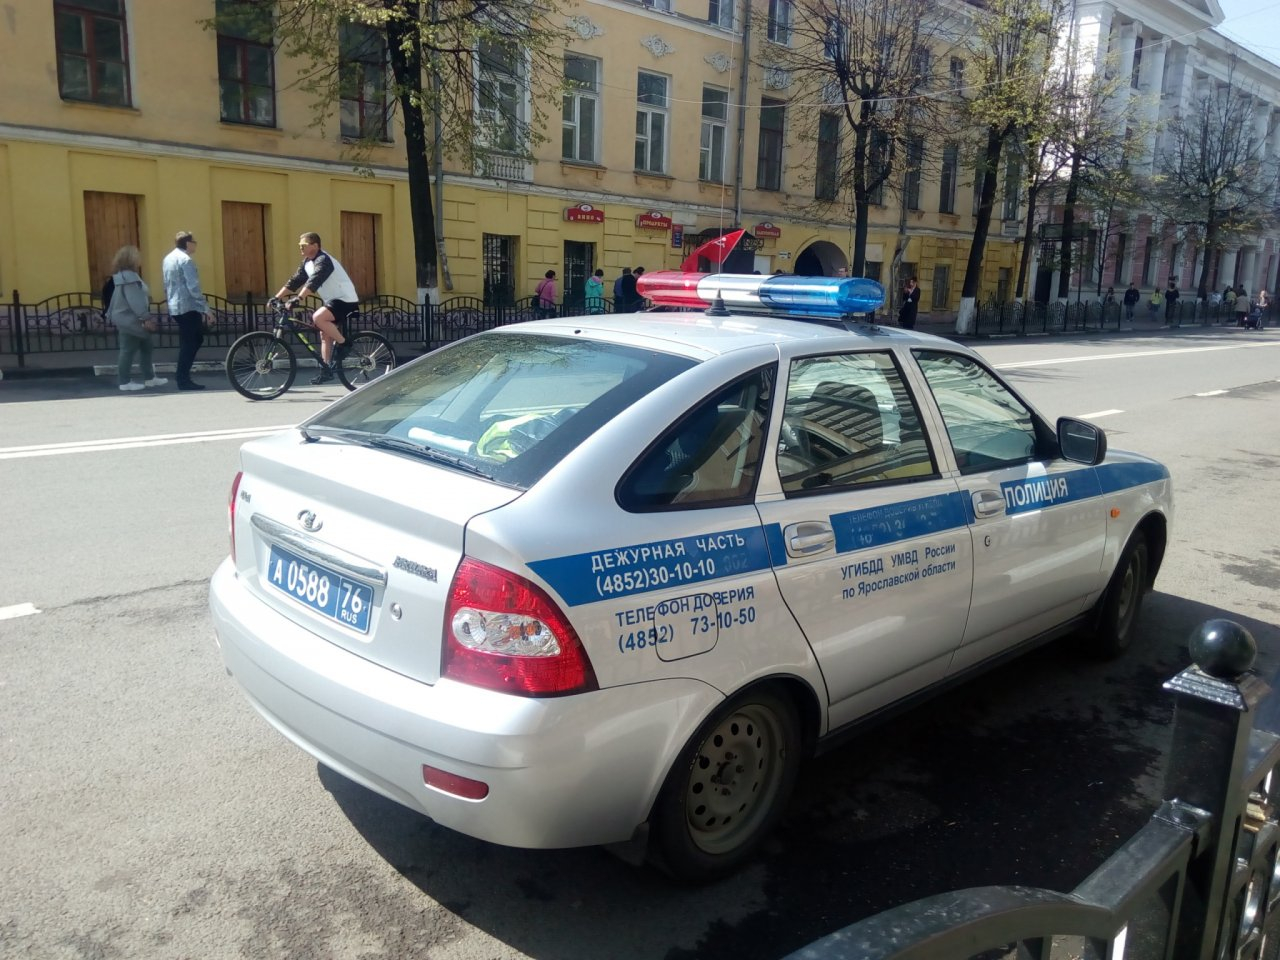 Понравилась девушка - прояви себя: ухажер из Рыбинска разбил авто своей подруги